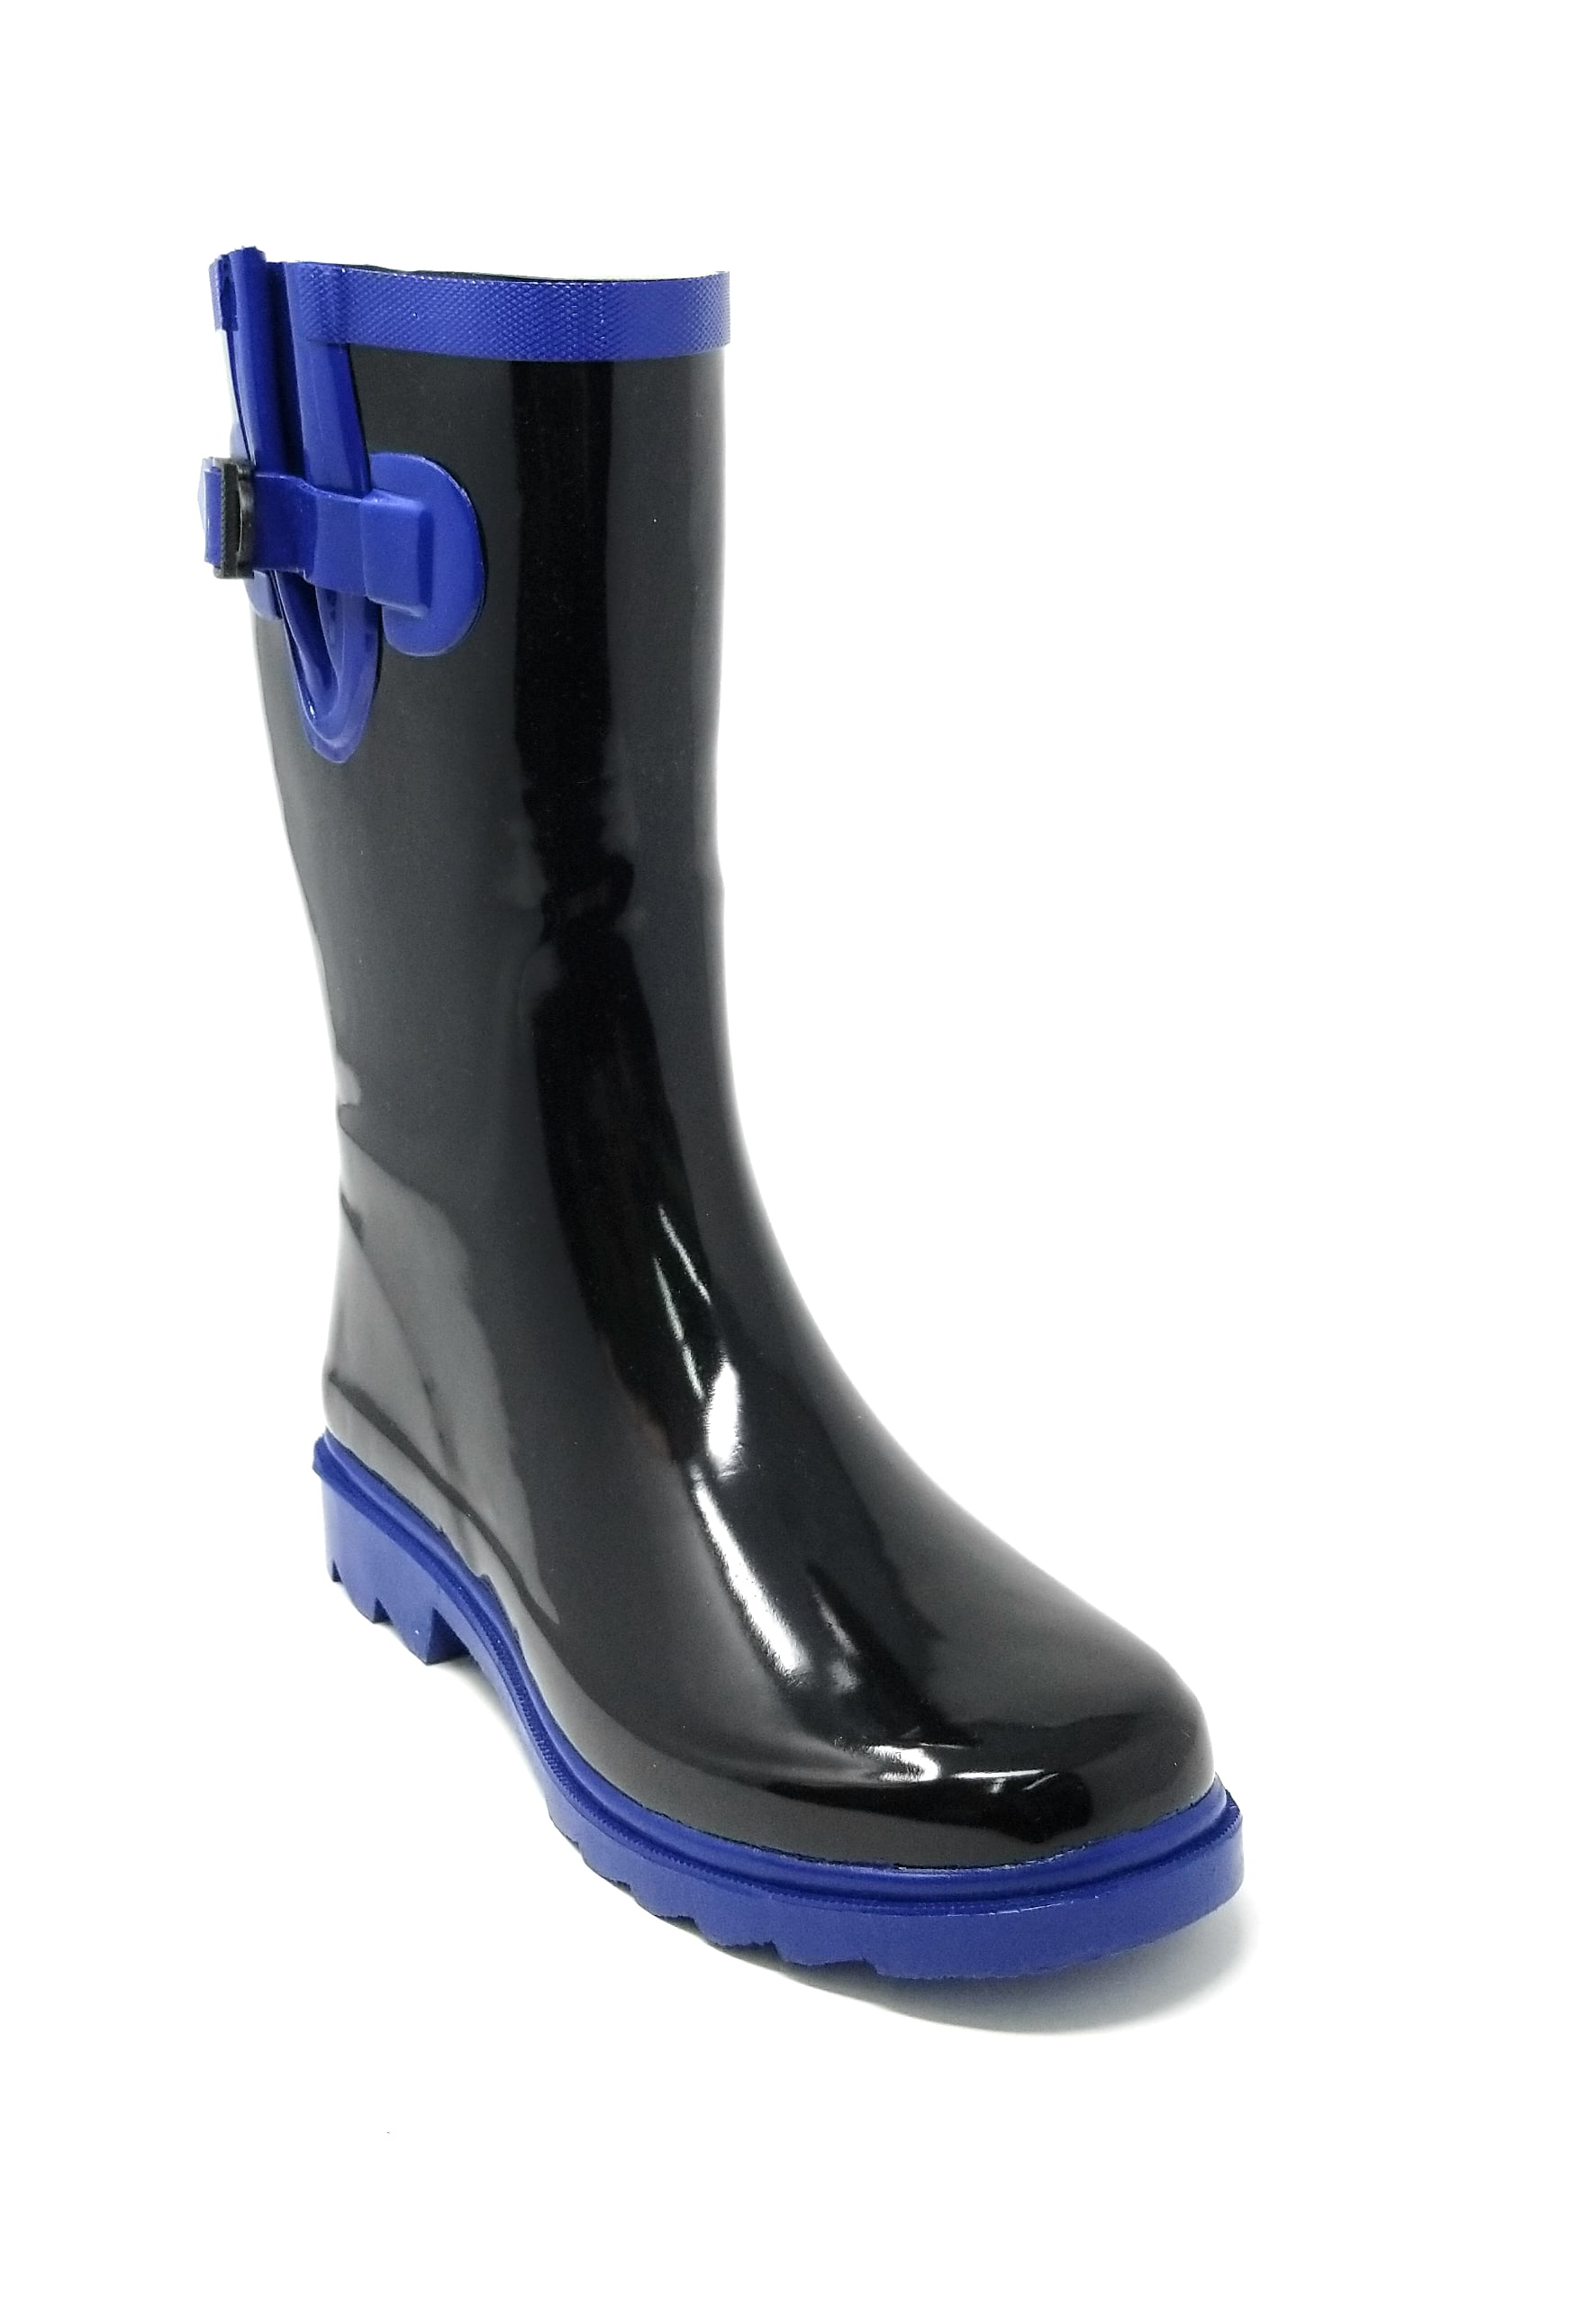 Rain Boots Women Waterproof Rubber Boots Mid Calf Lightweight Comfortable Non Slip Garden Shoes Black Blue US 5-11 